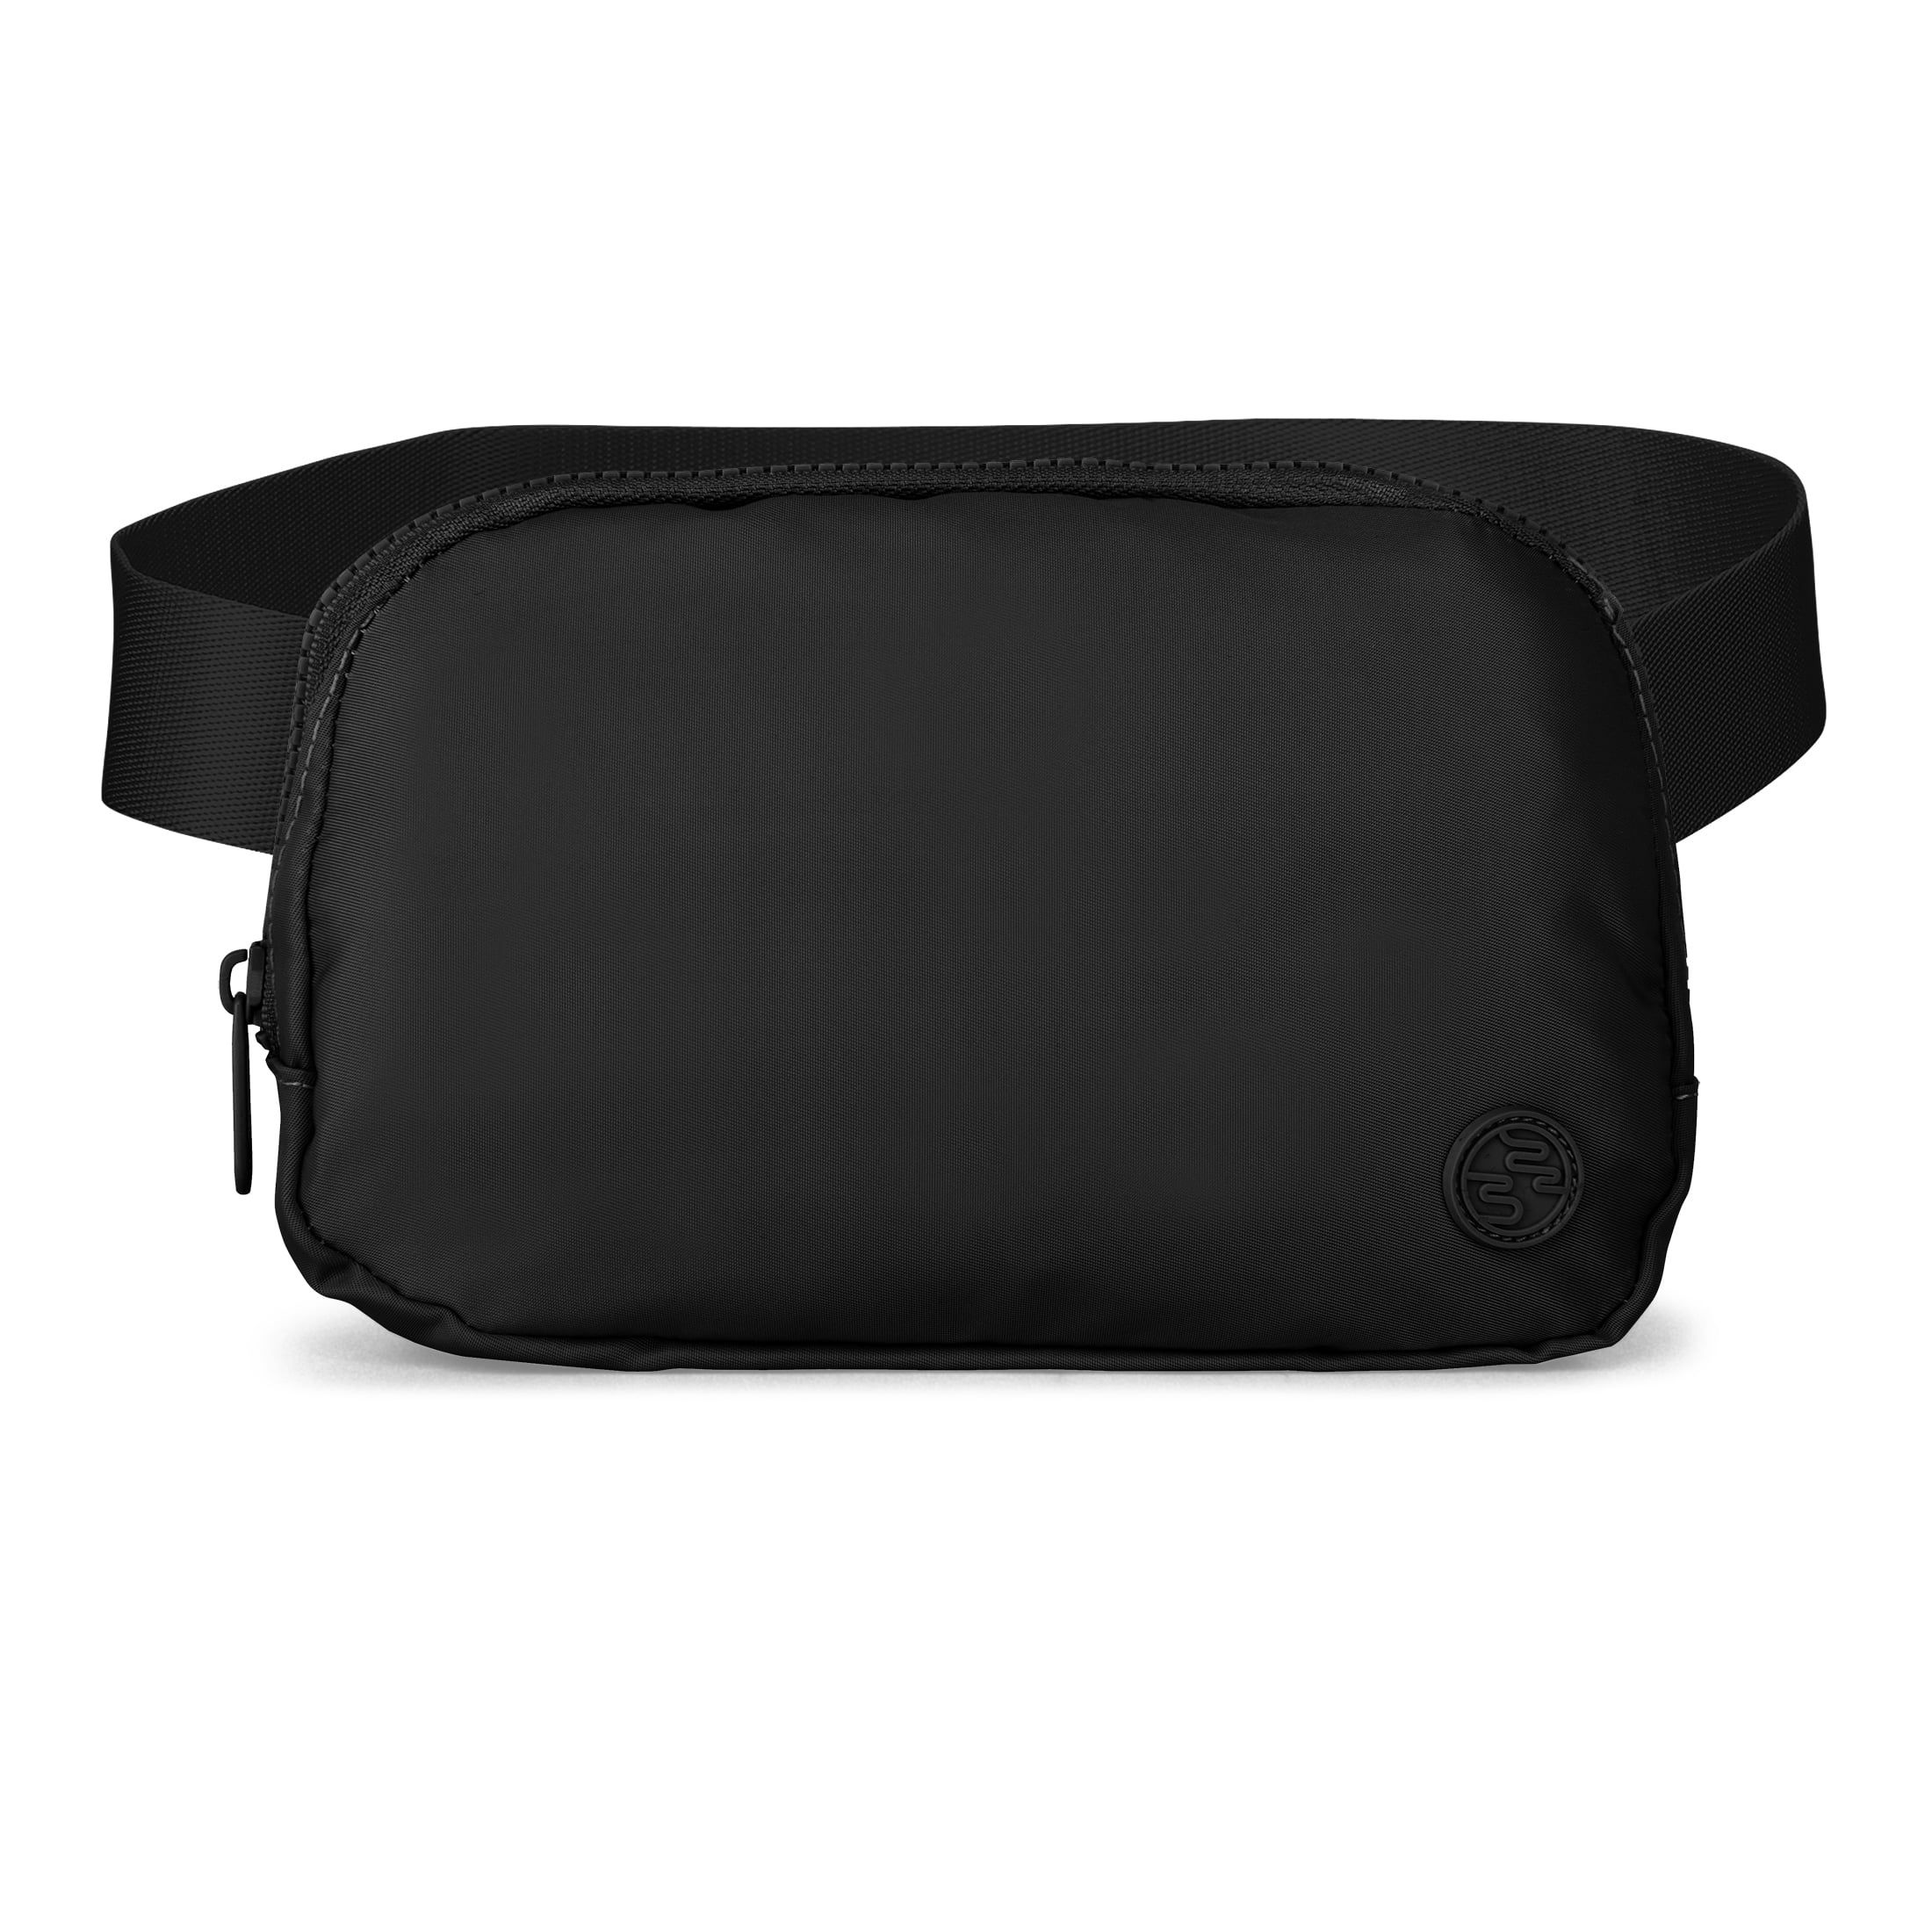 iFLY Travel Belt/Sling Bag with Adjustable Shoulder or Waist Strap, Black - Walmart.com | Walmart (US)